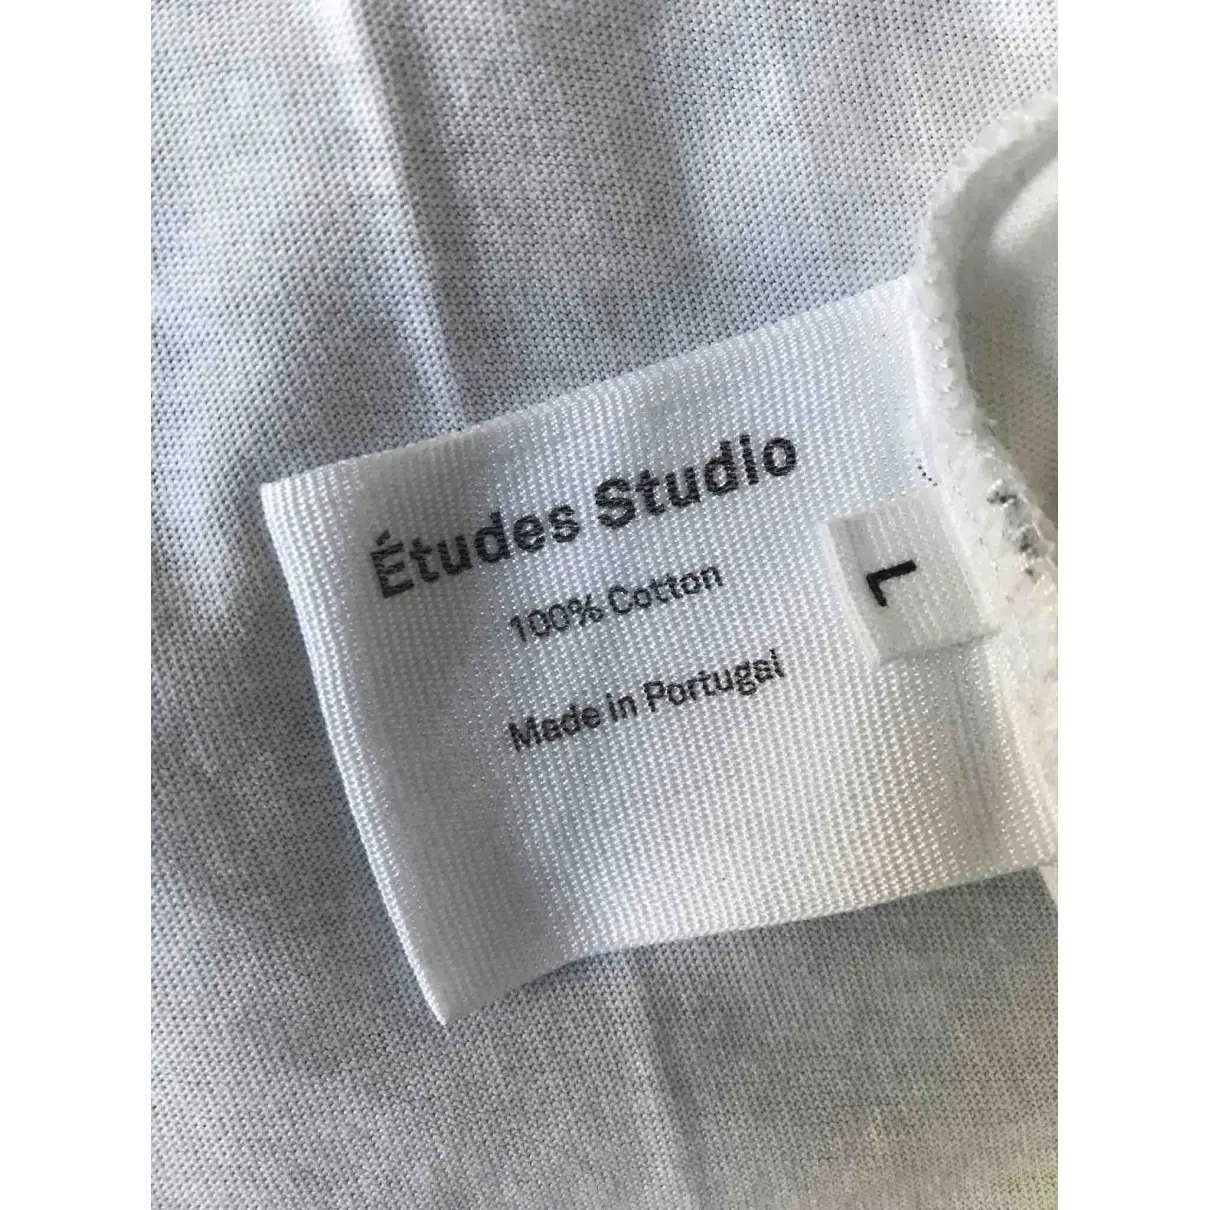 Buy Études Studio T-shirt online